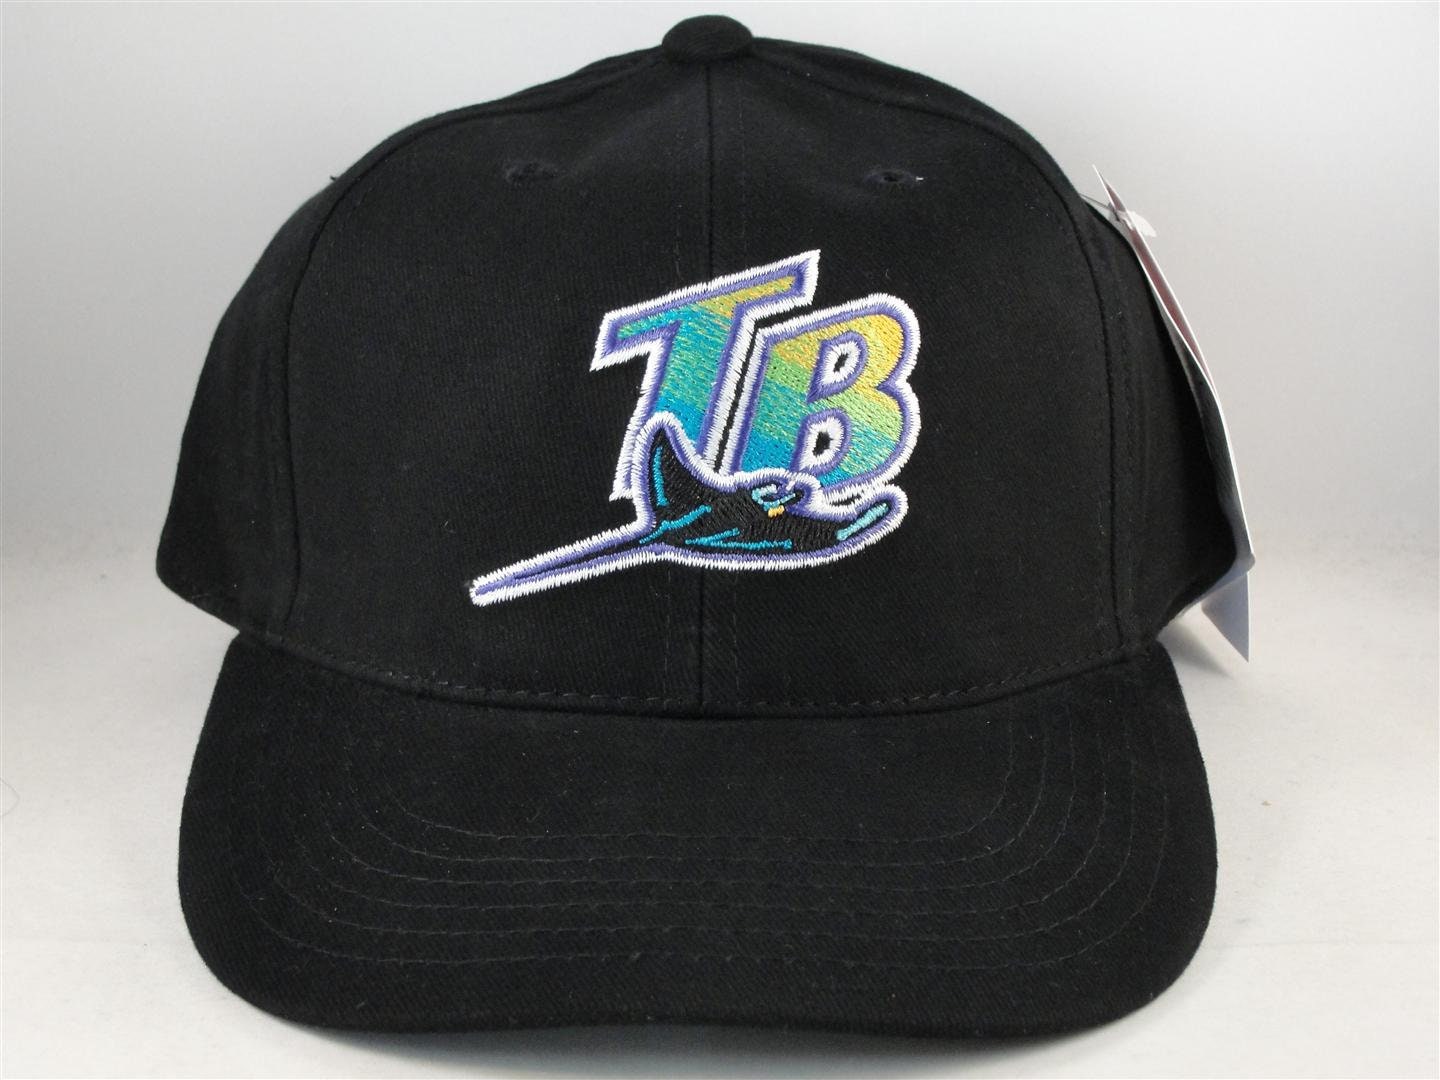 1998 tampa bay devil rays hat